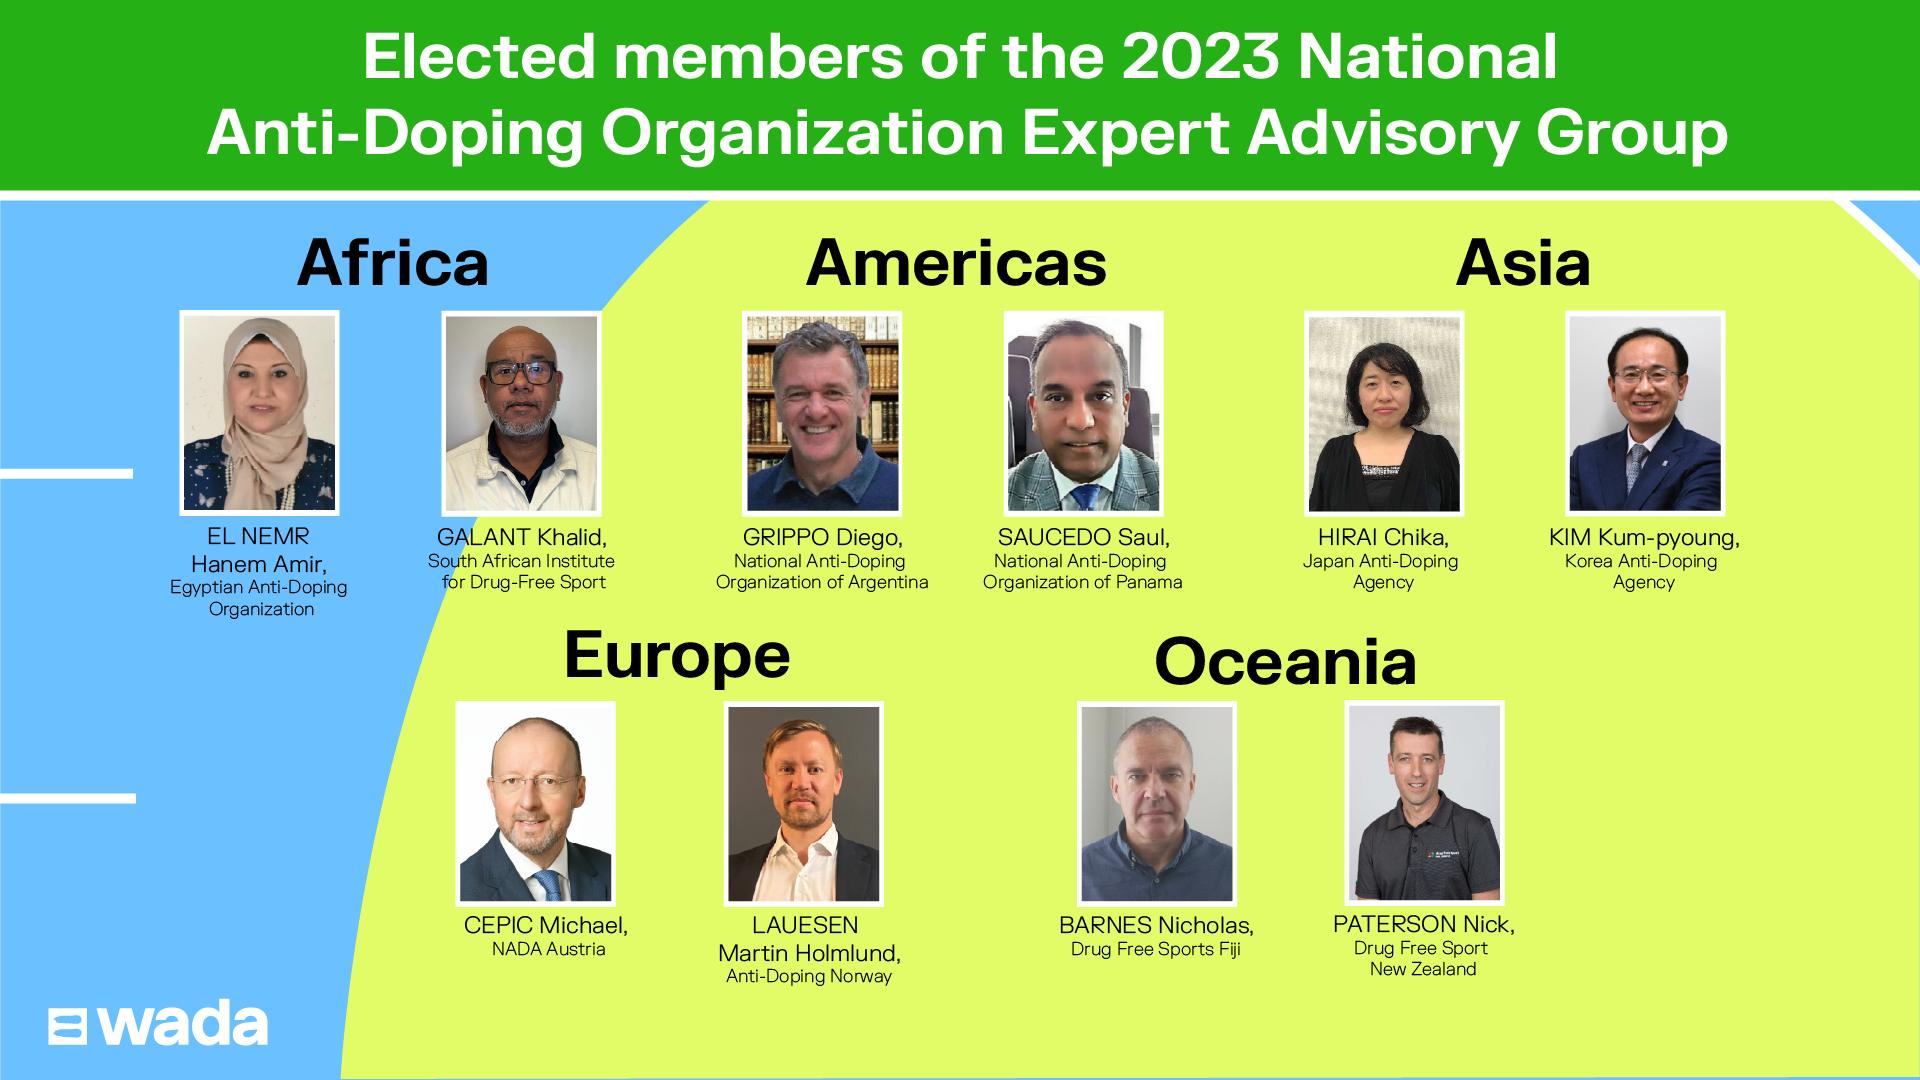 Miembros del Grupo Asesor de Expertos de las Organizaciones Nacionales Antidopaje de la Agencia Mundial Antidopaje para el año 2023